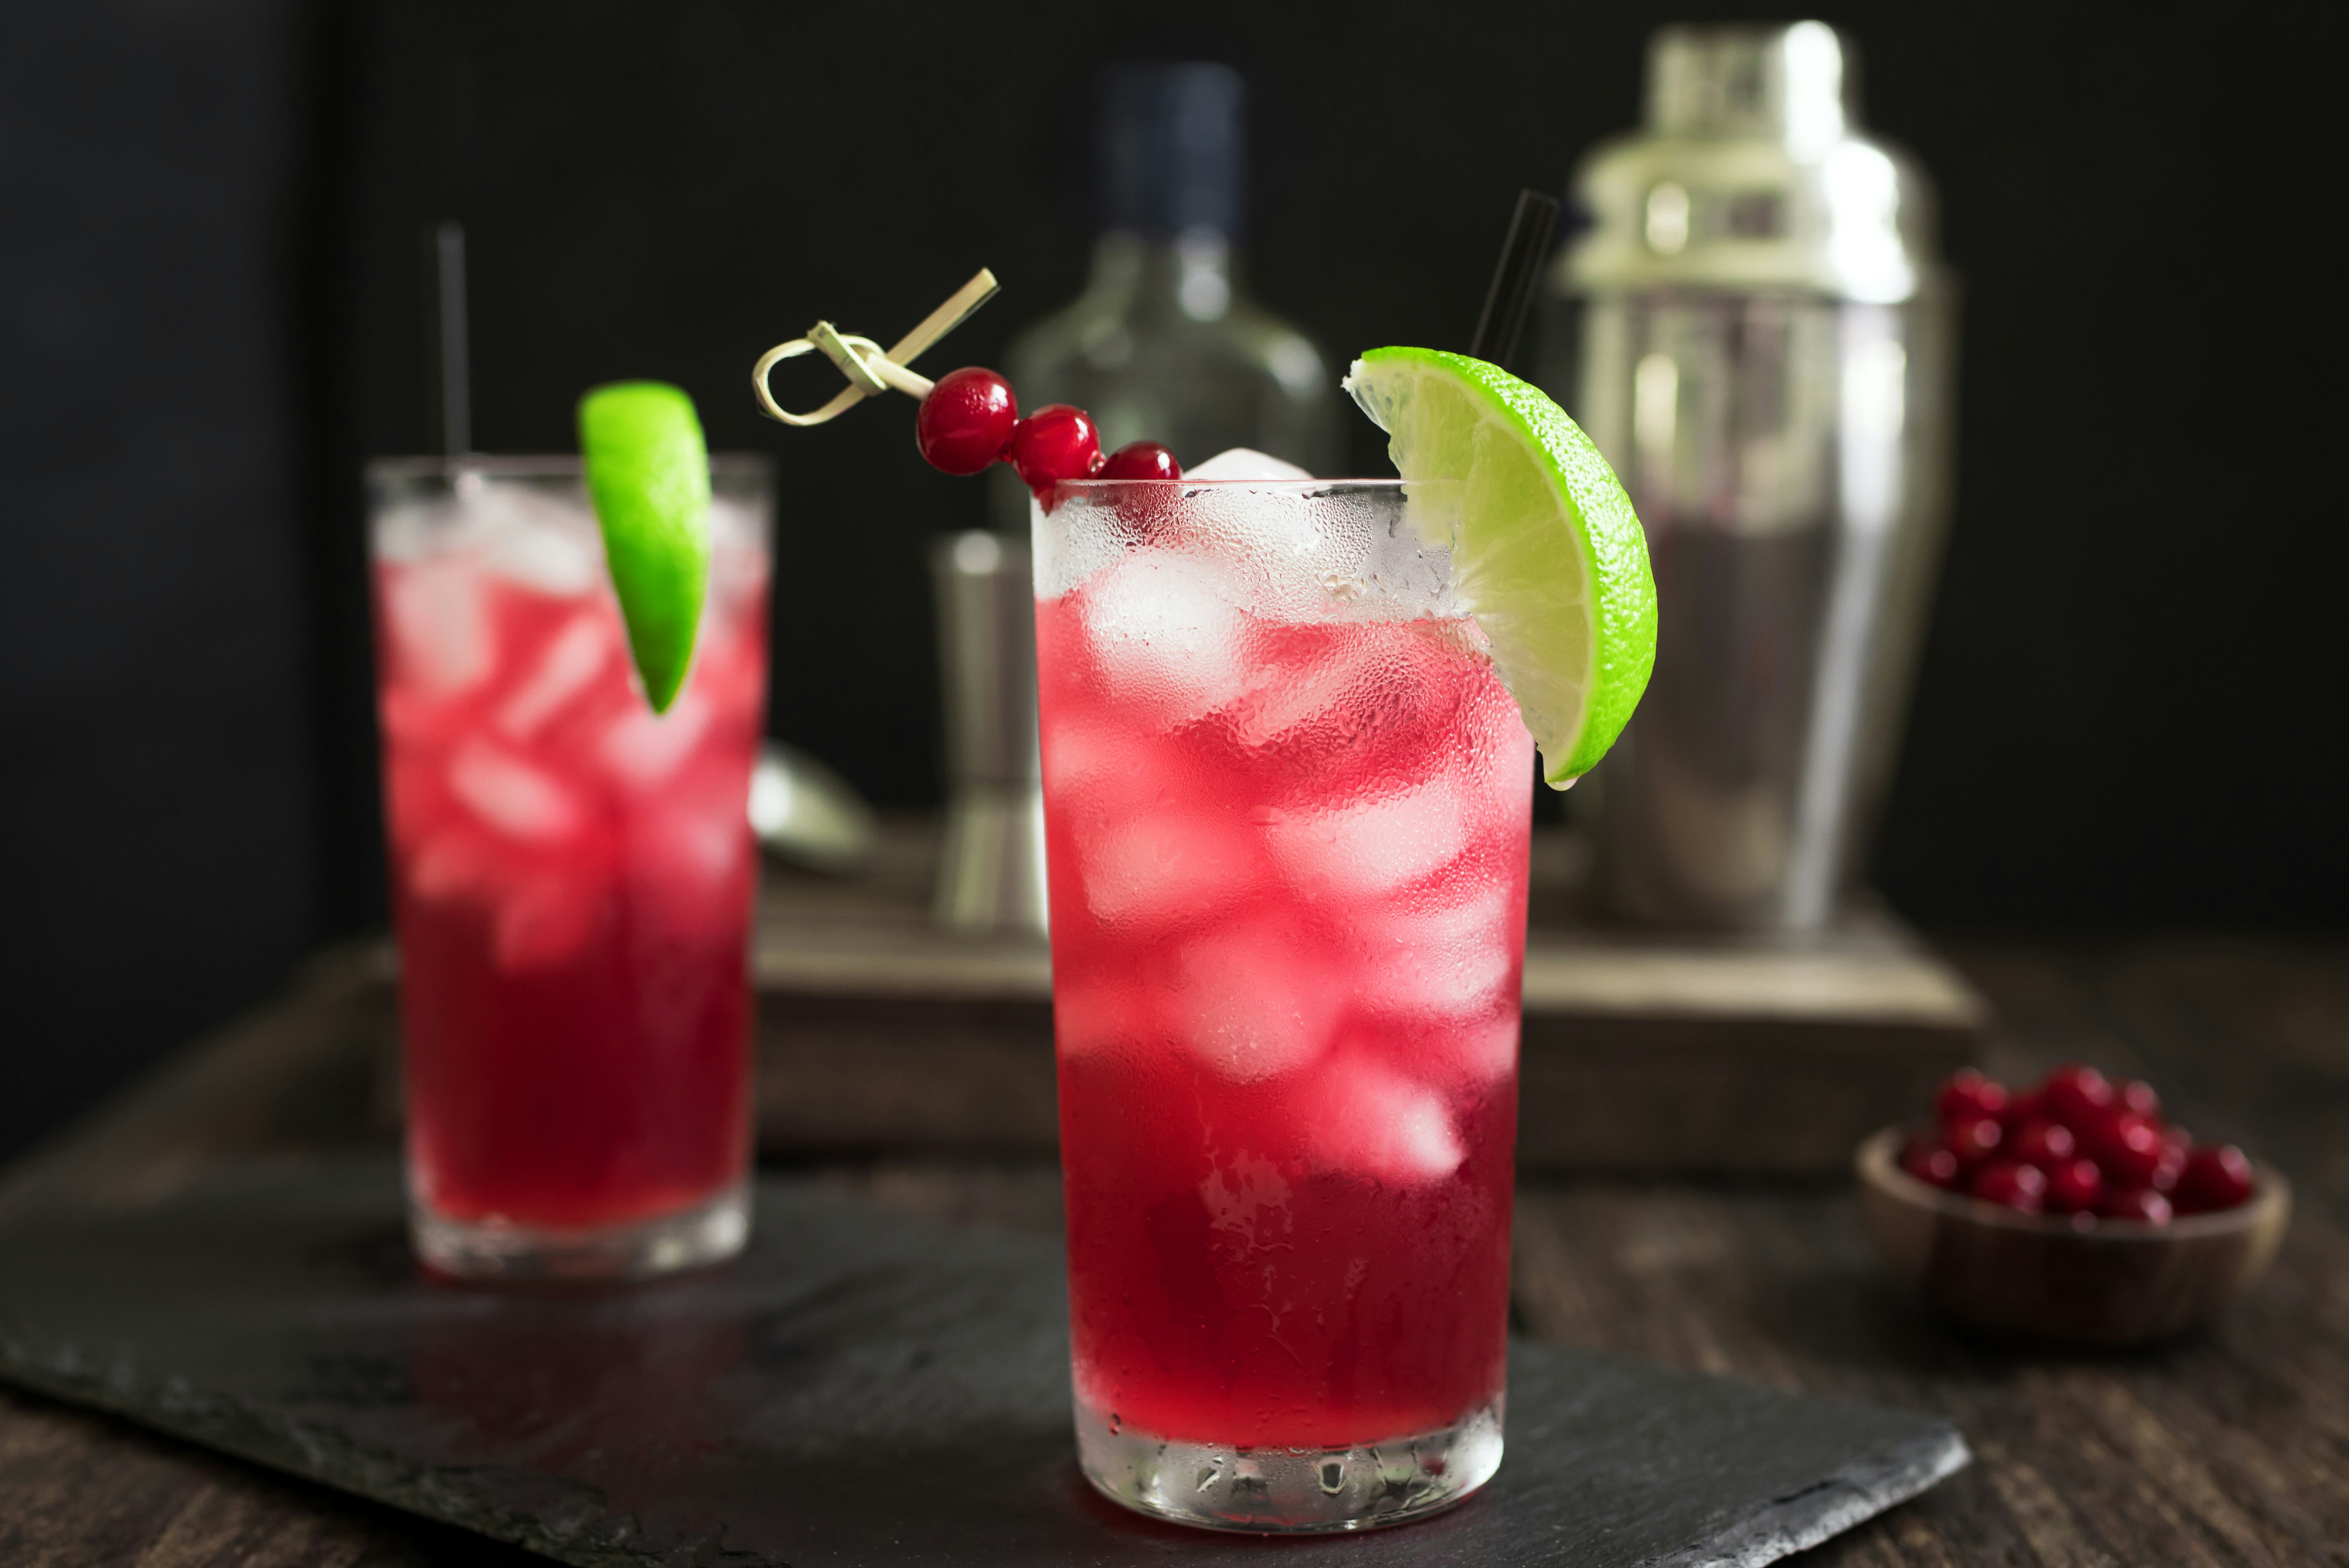 Ett par höga glas fyllda med tranbärsjuice och vodka och is.  Det finns en limeklyfta på glasets kant, ett långt svart sugrör och en rad tranbär.